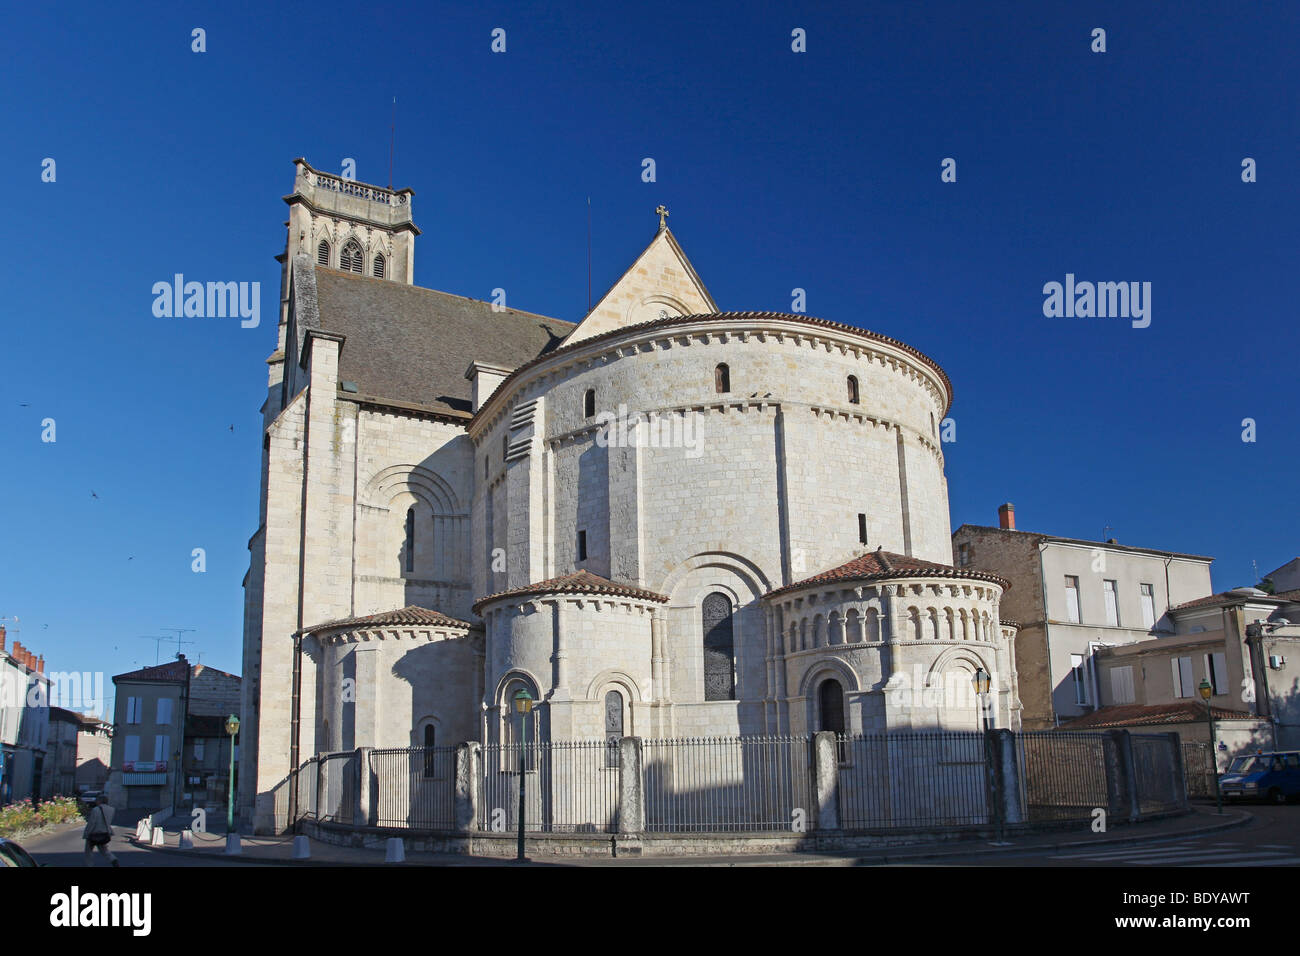 Cathédrale Saint Caprais Cathedral, Agen, Lot-et-Garonne, Aquitaine, France, Europe Stock Photo